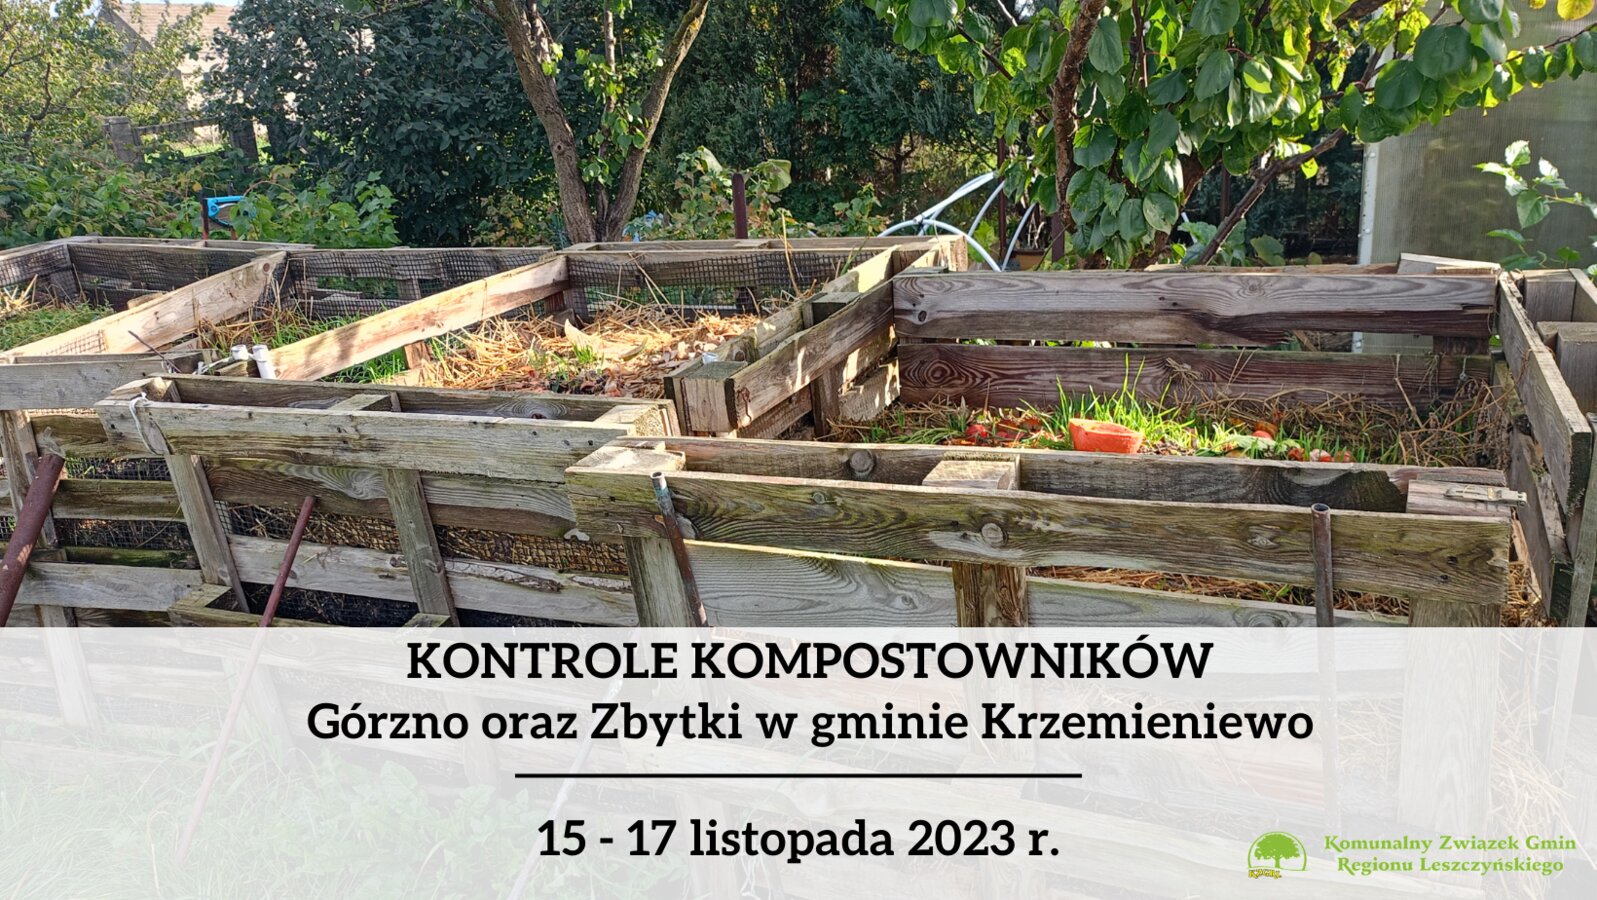 Zawiadomienie o kontrolach przydomowych kompostowników - Górzno i Zbytki w gminie Krzemieniewo